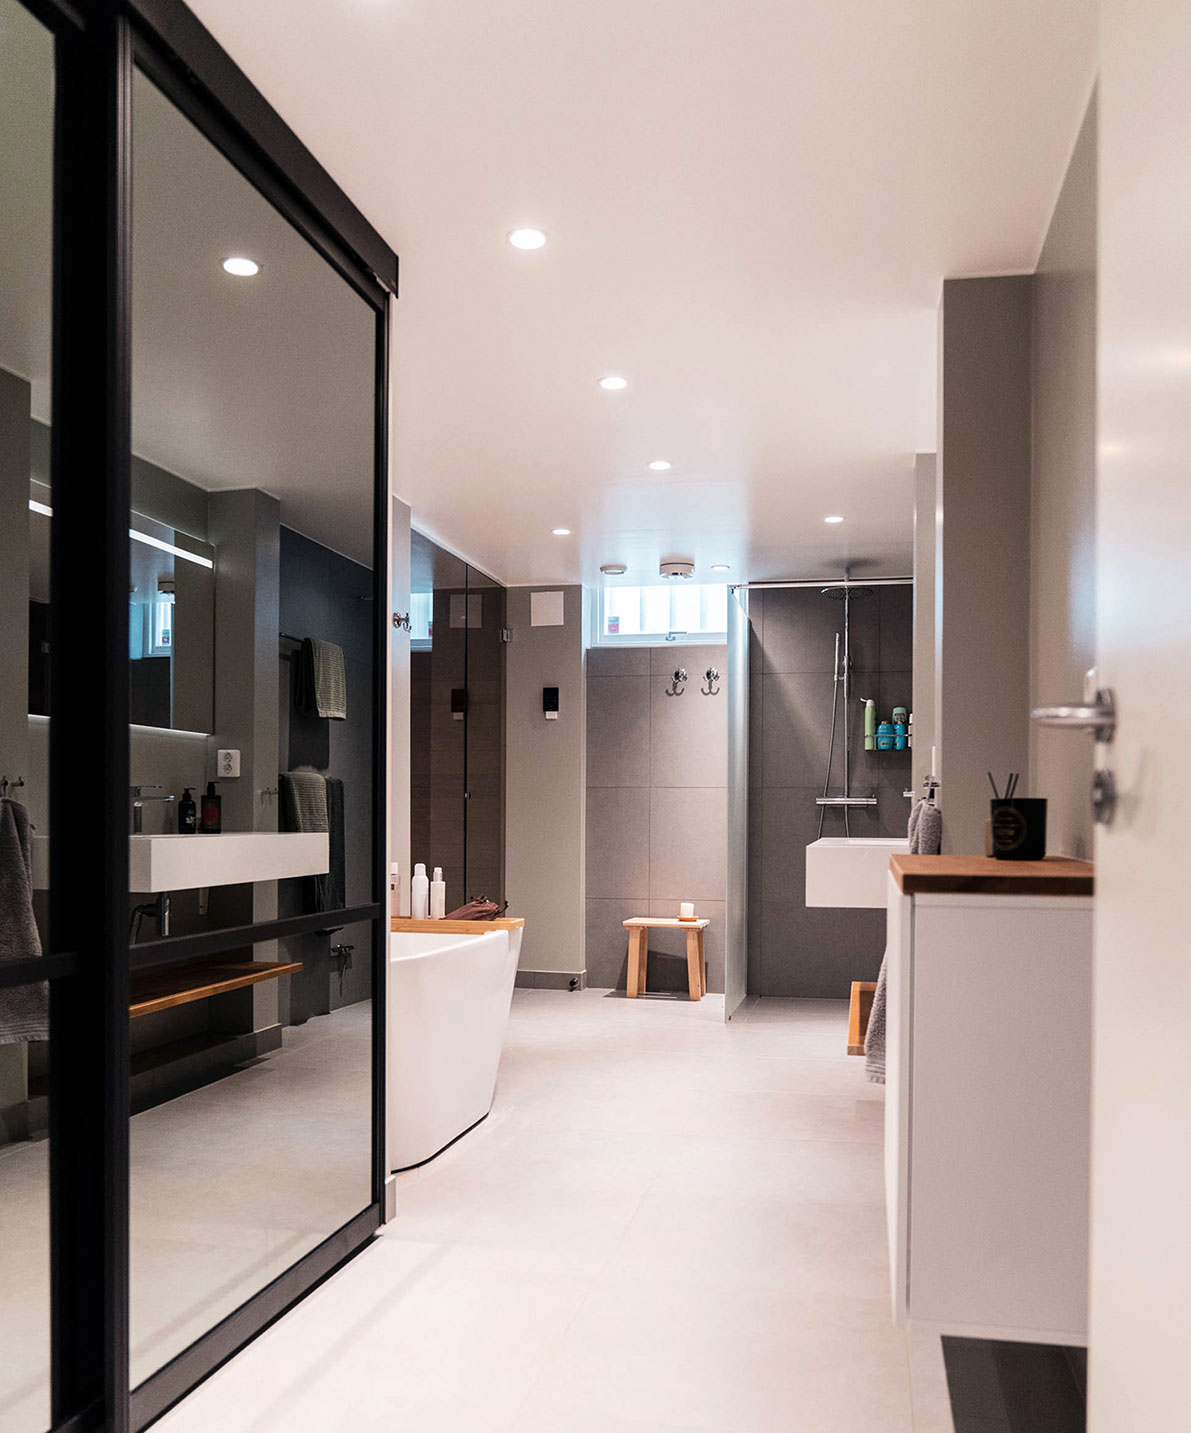 Lyxigt renoverat badrum med badkar, dusch och bastu i svarta, gråa och vita toner med inslag av träelement